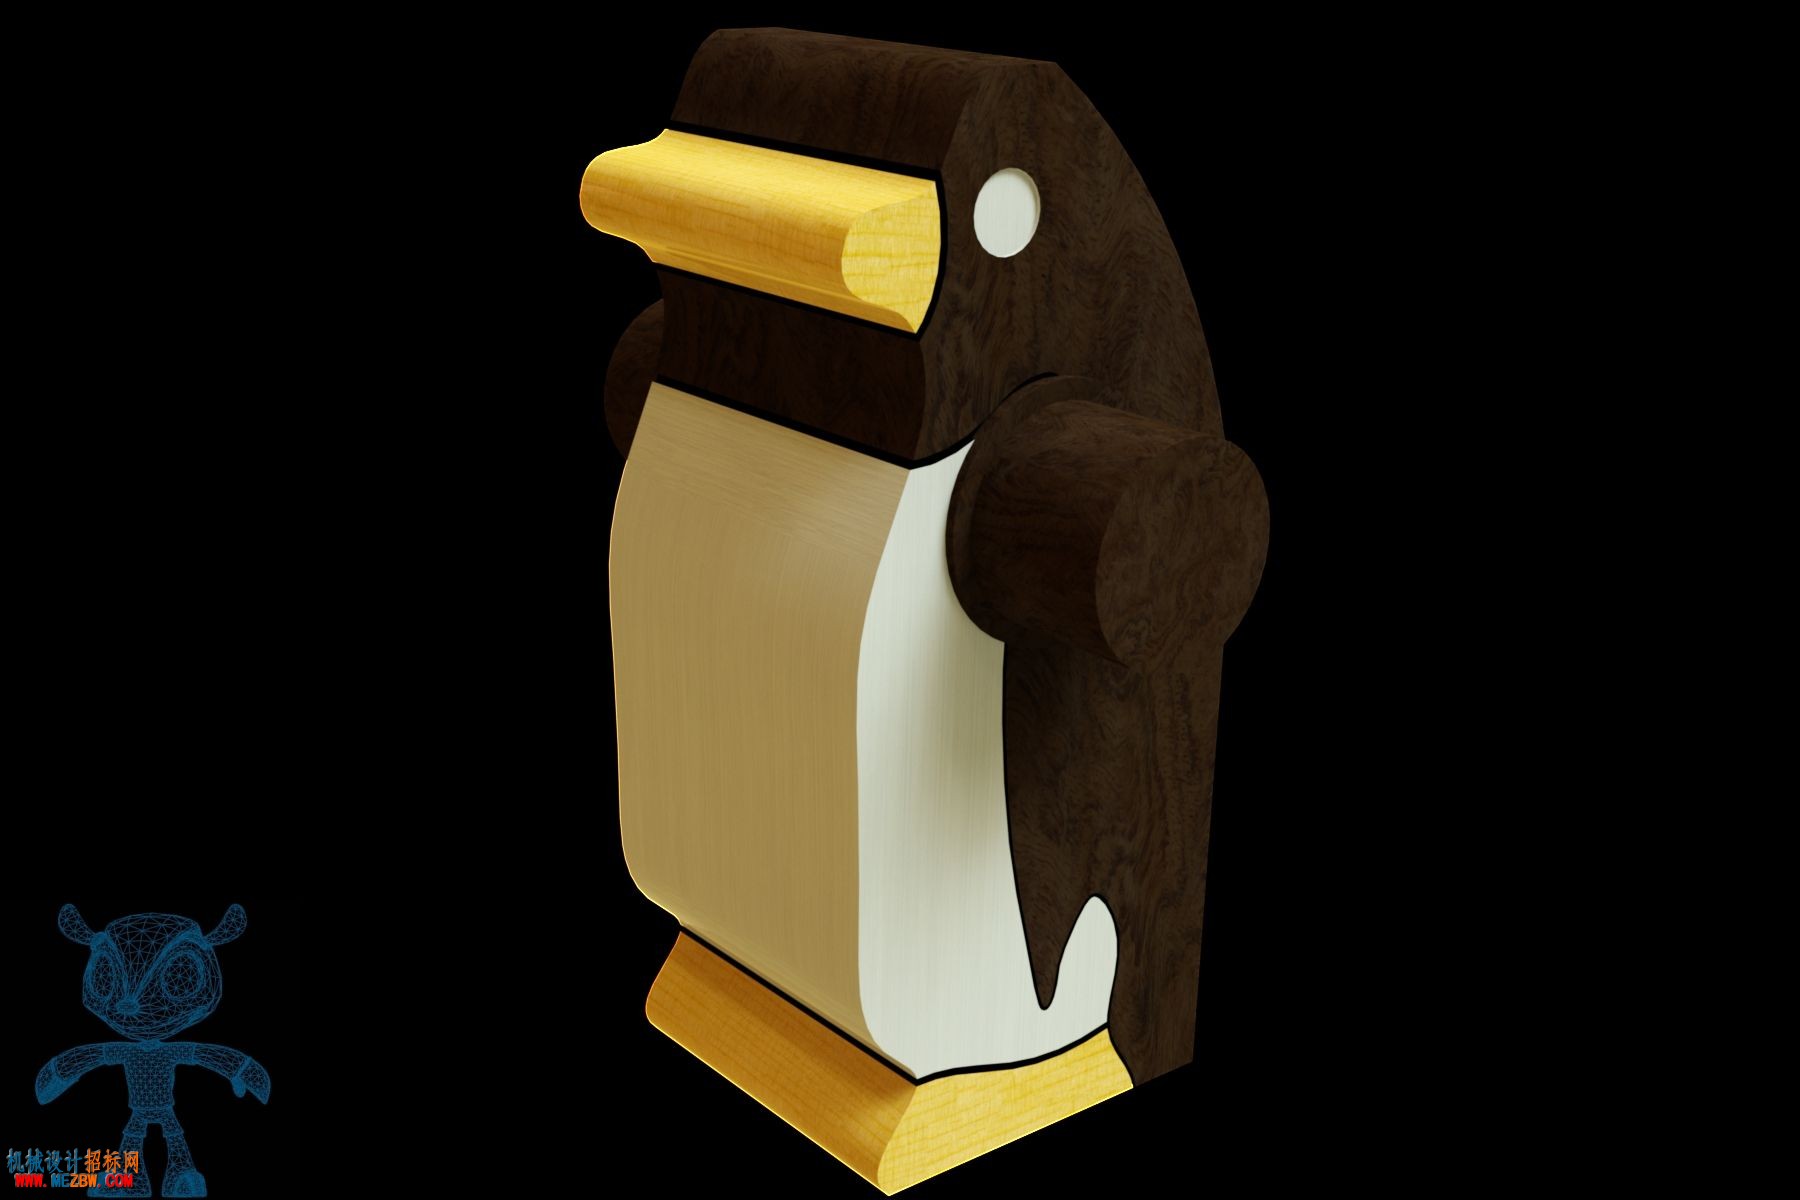 好玩的企鹅攀登玩具的企鹅模型.jpg